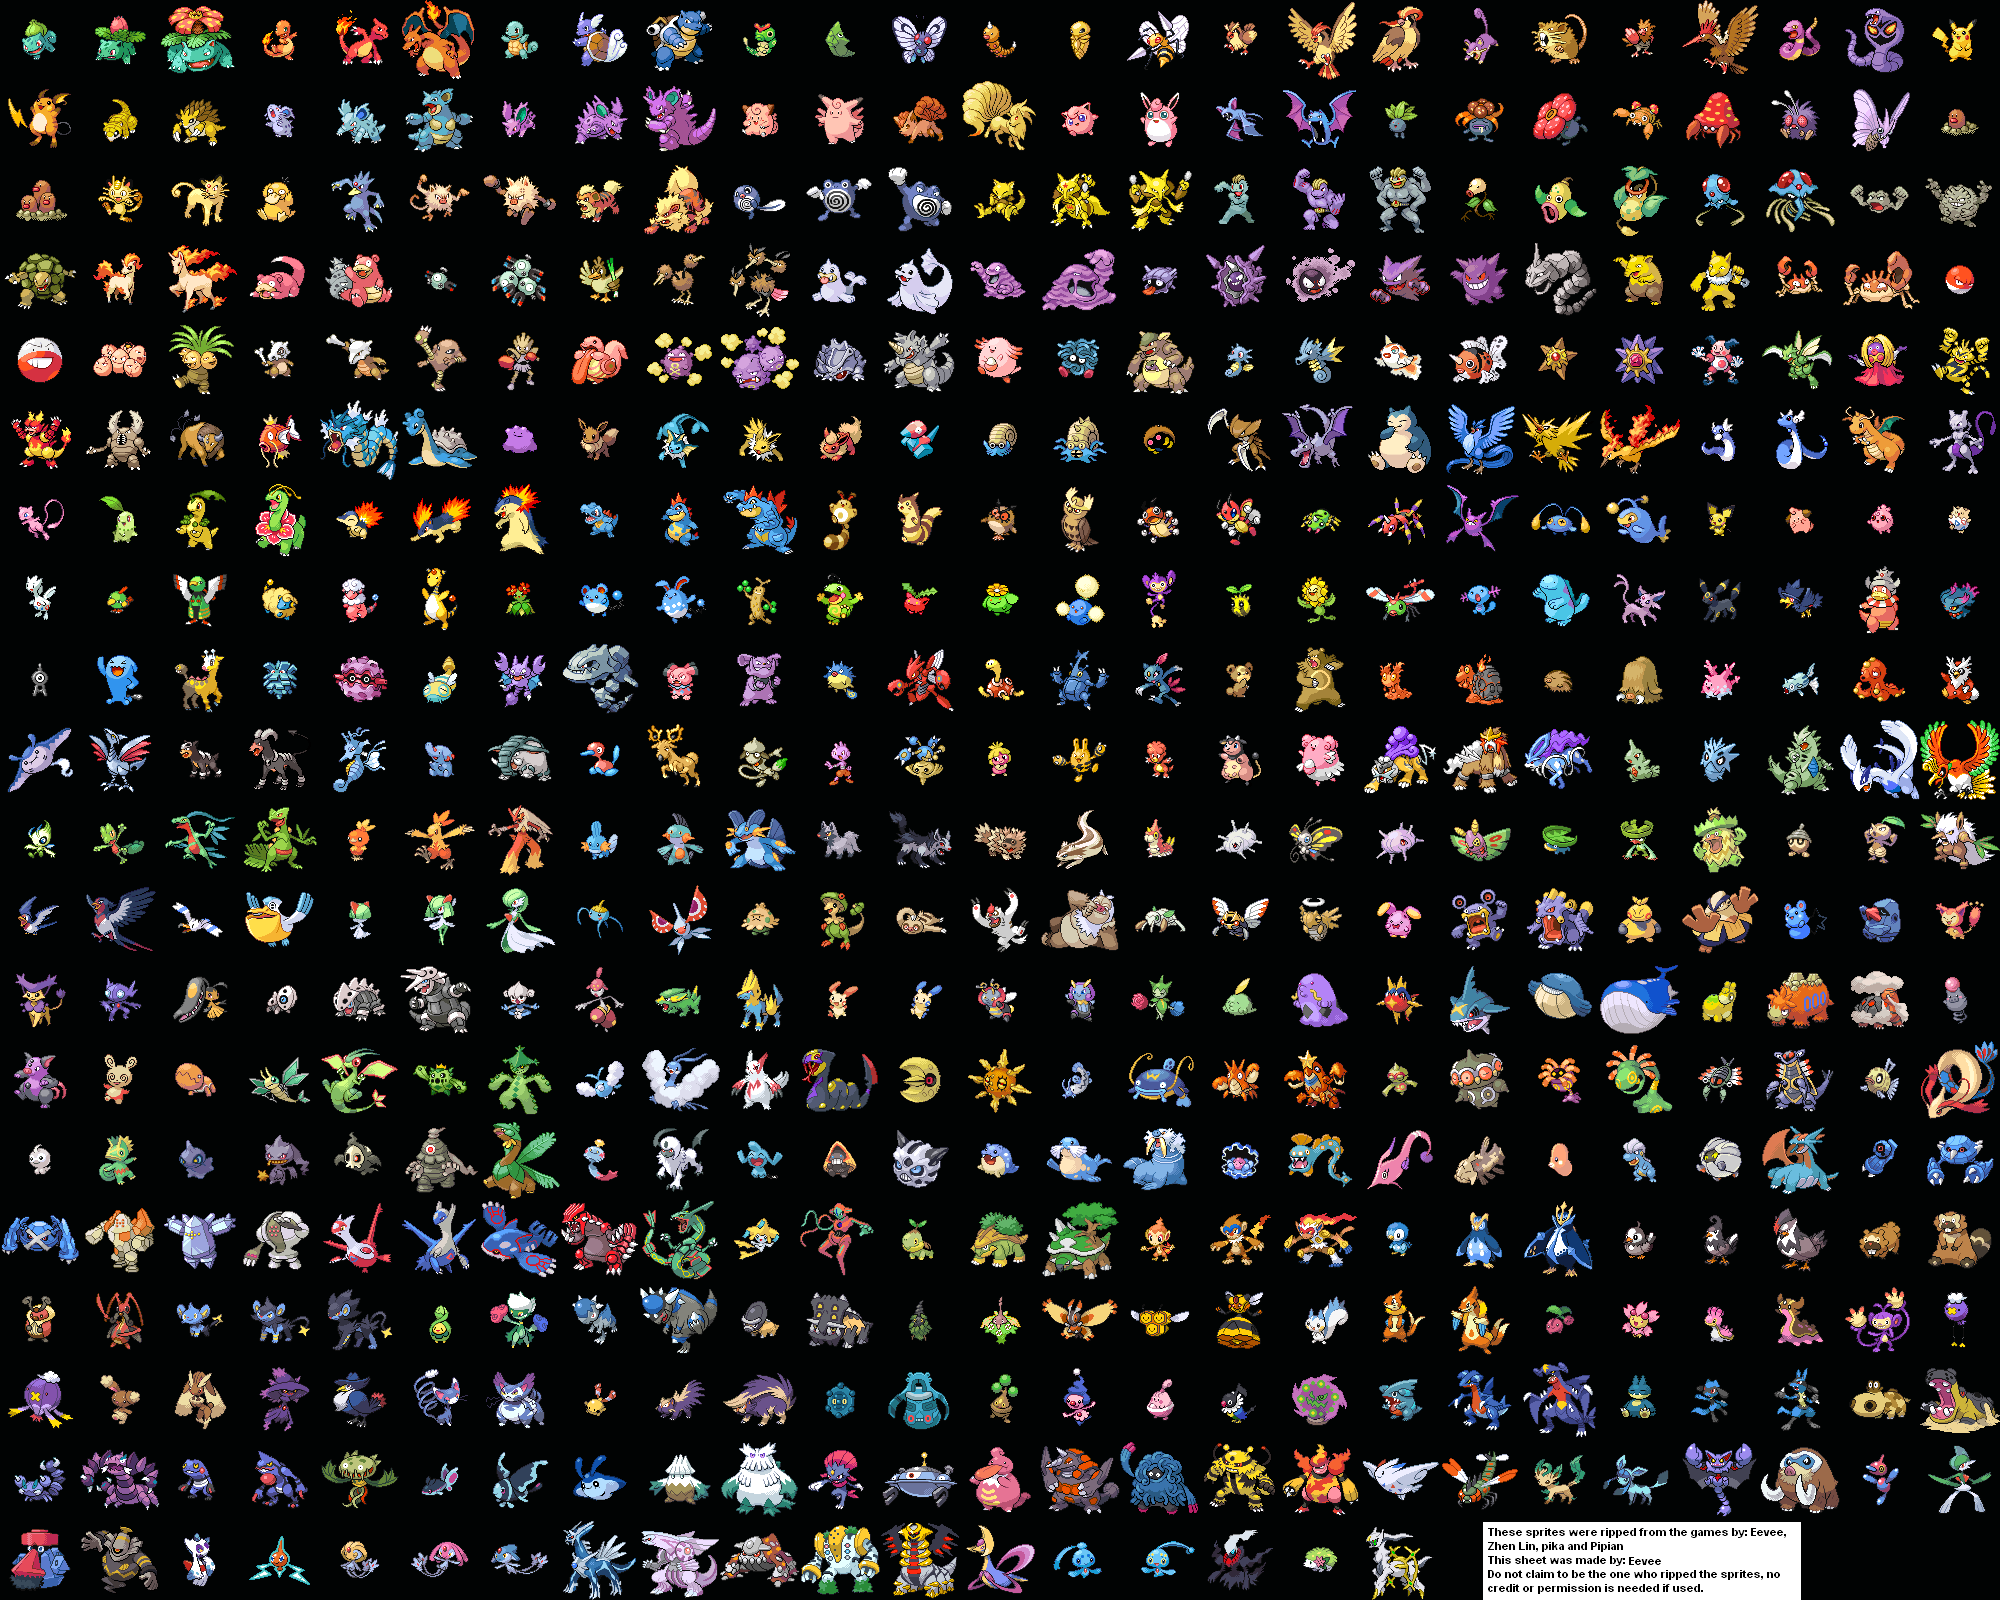 original 250 pokemon